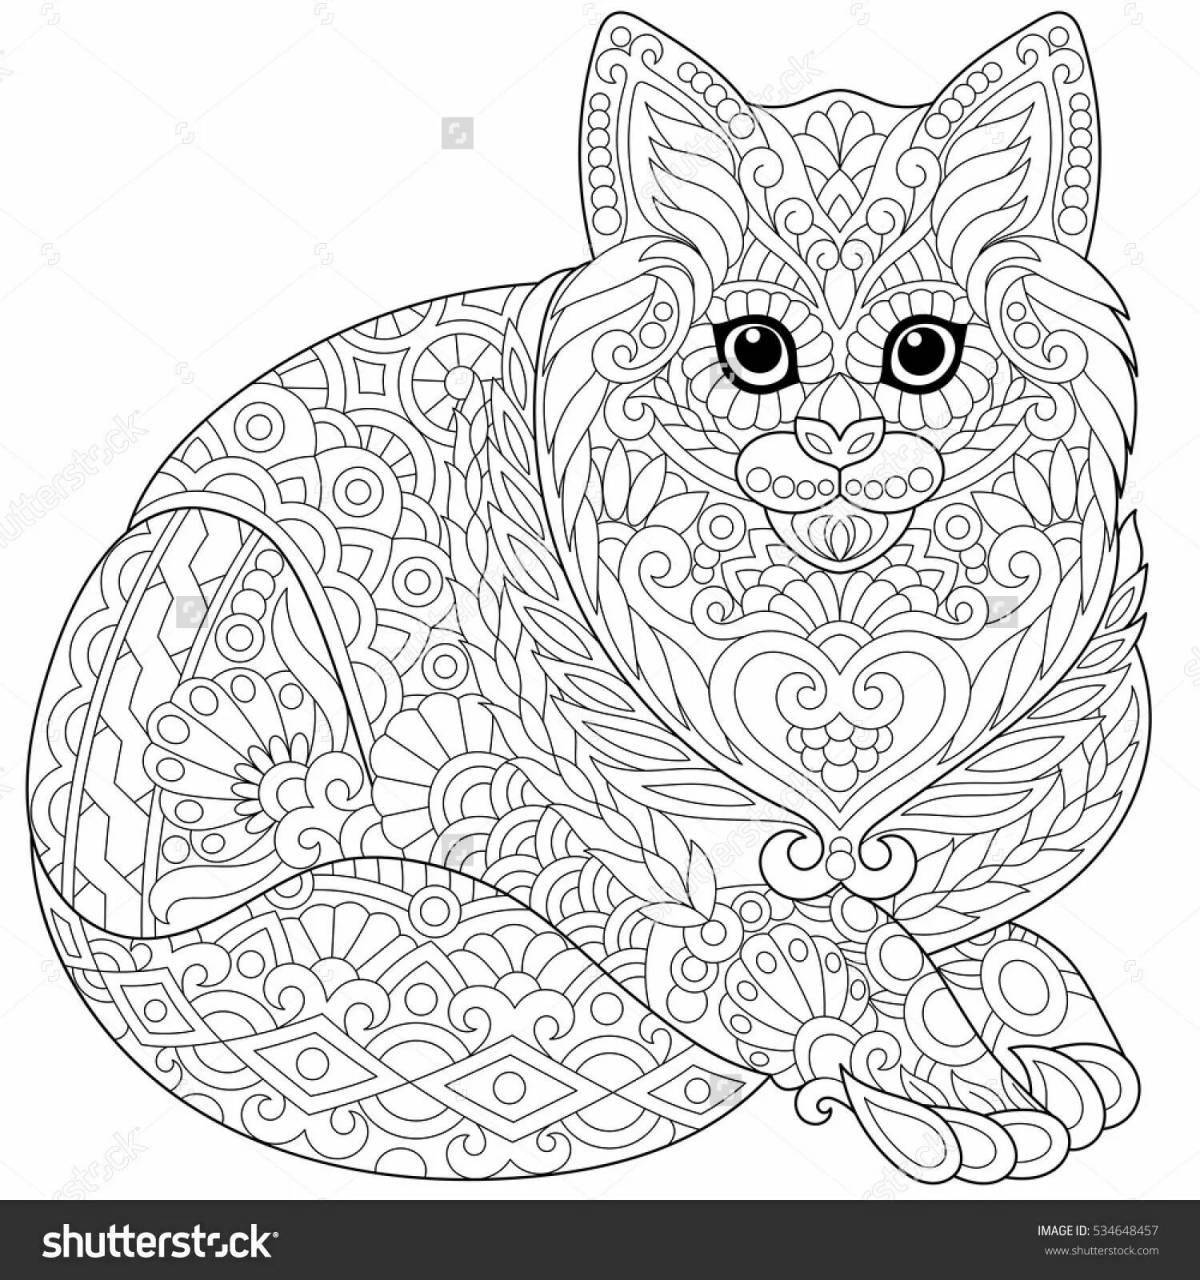 Majestic cat mandala coloring book